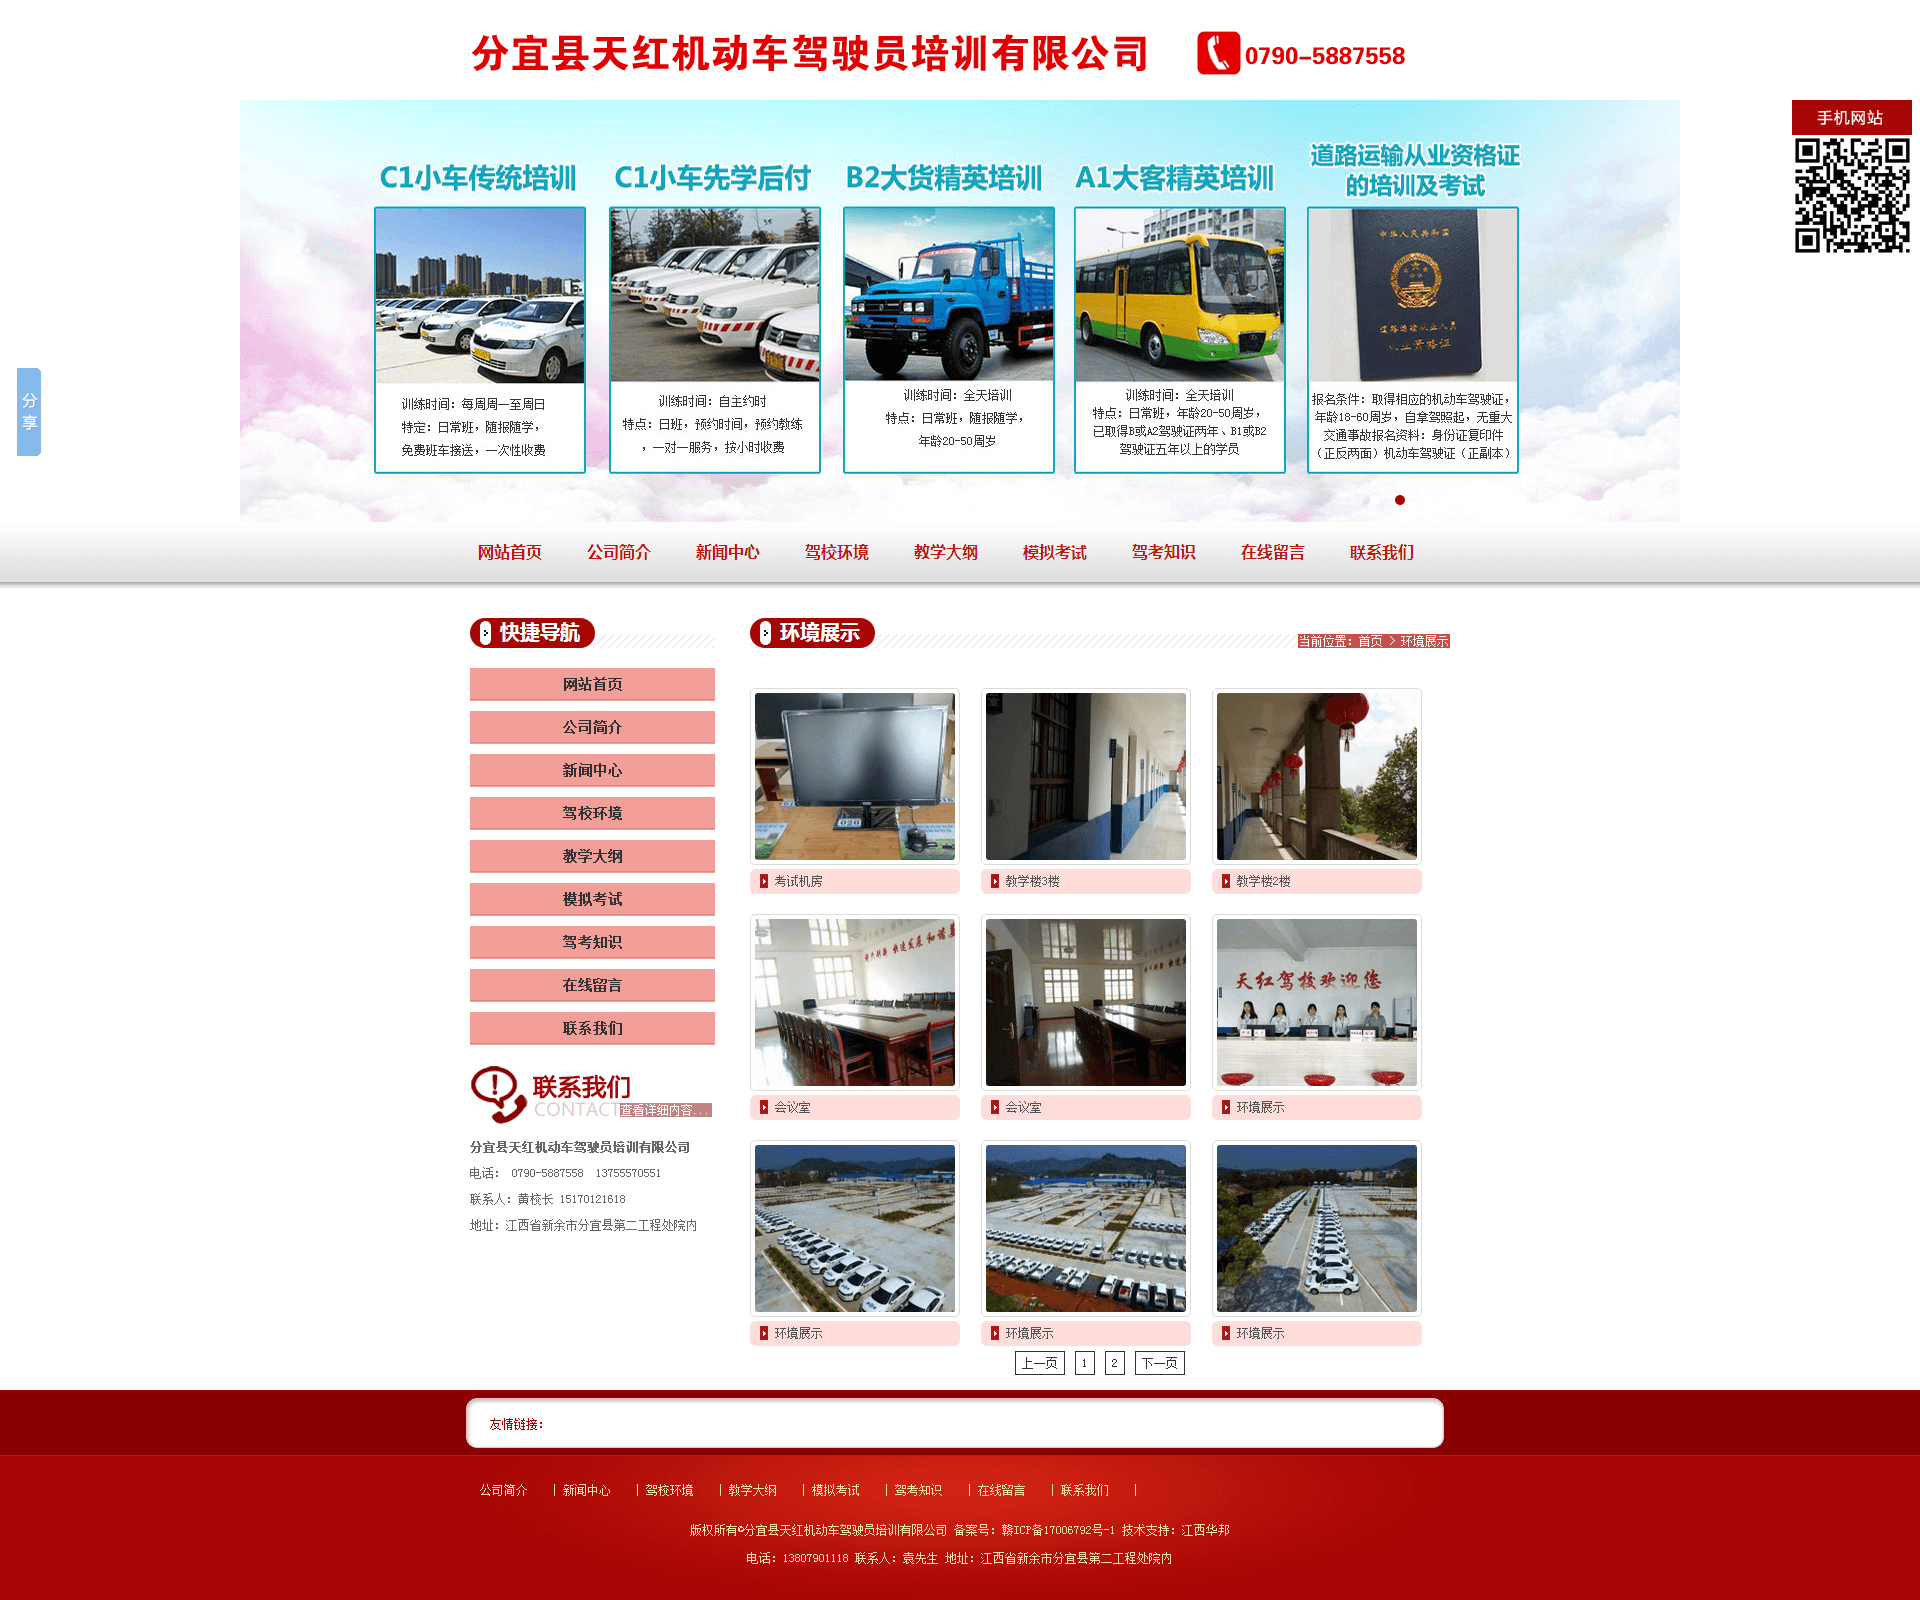 环境展示 - 分宜县天红机动车驾驶员培训有限公司 (1).png